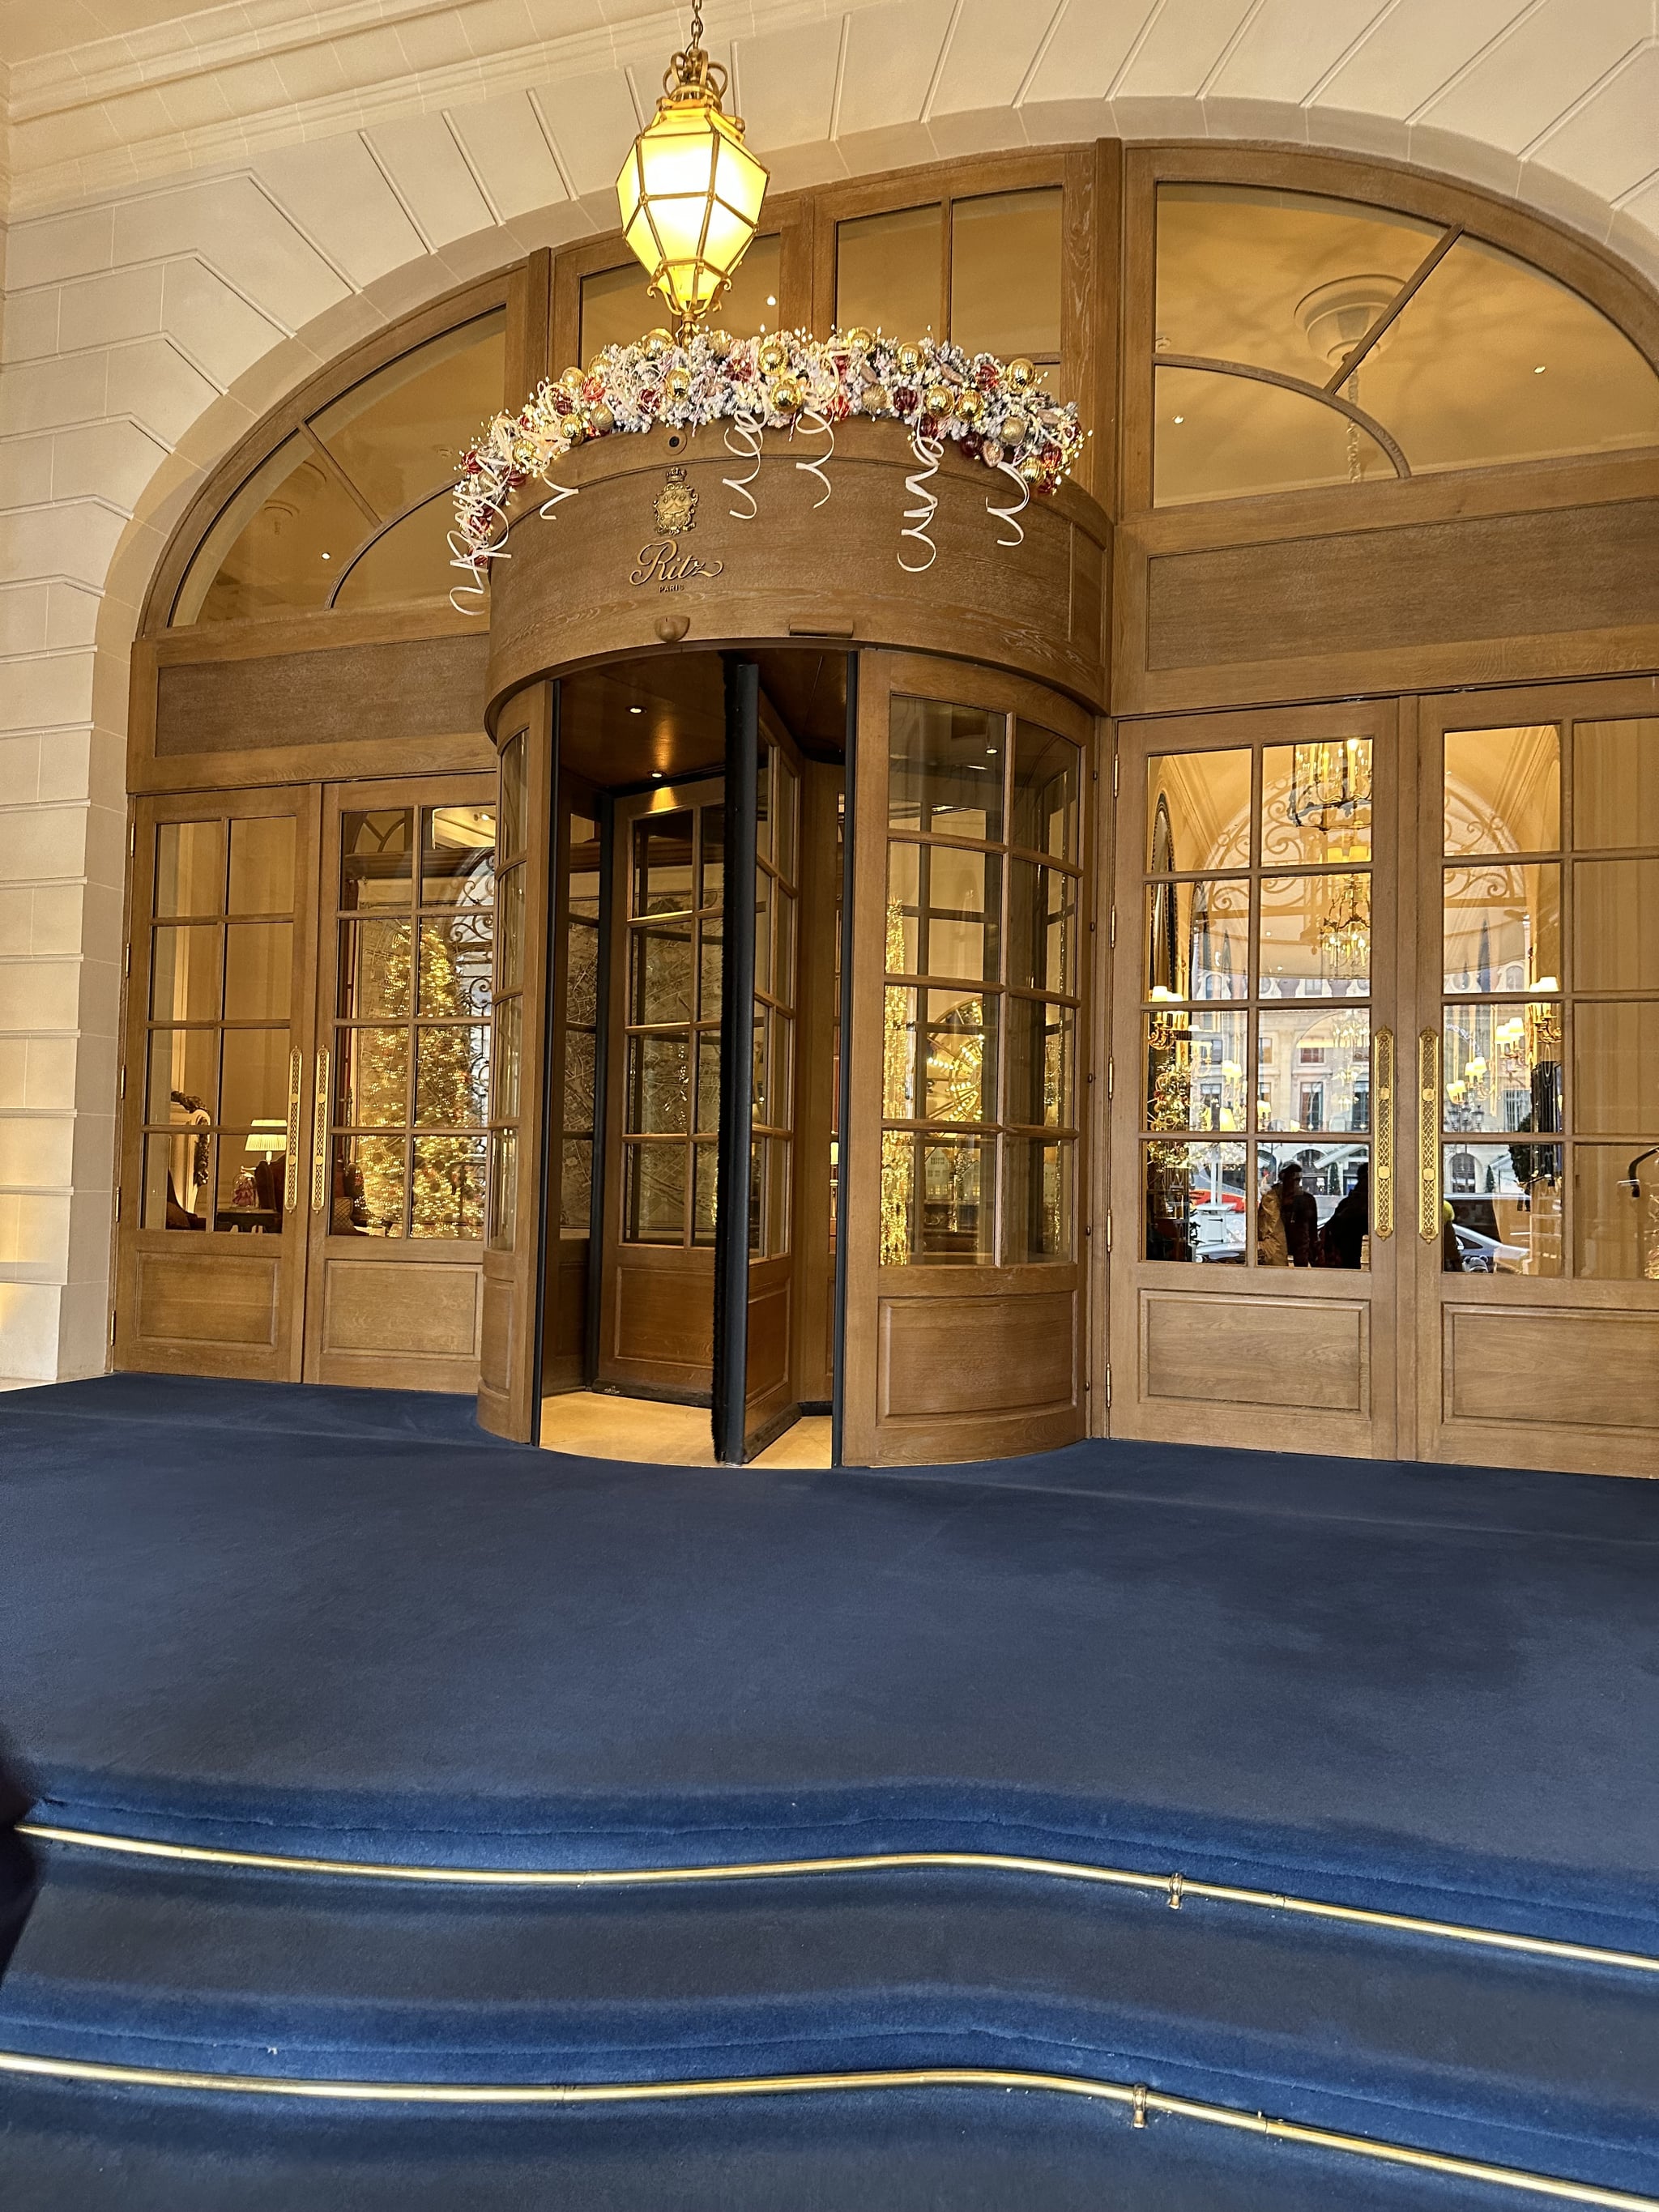 The exterior of the Ritz Paris